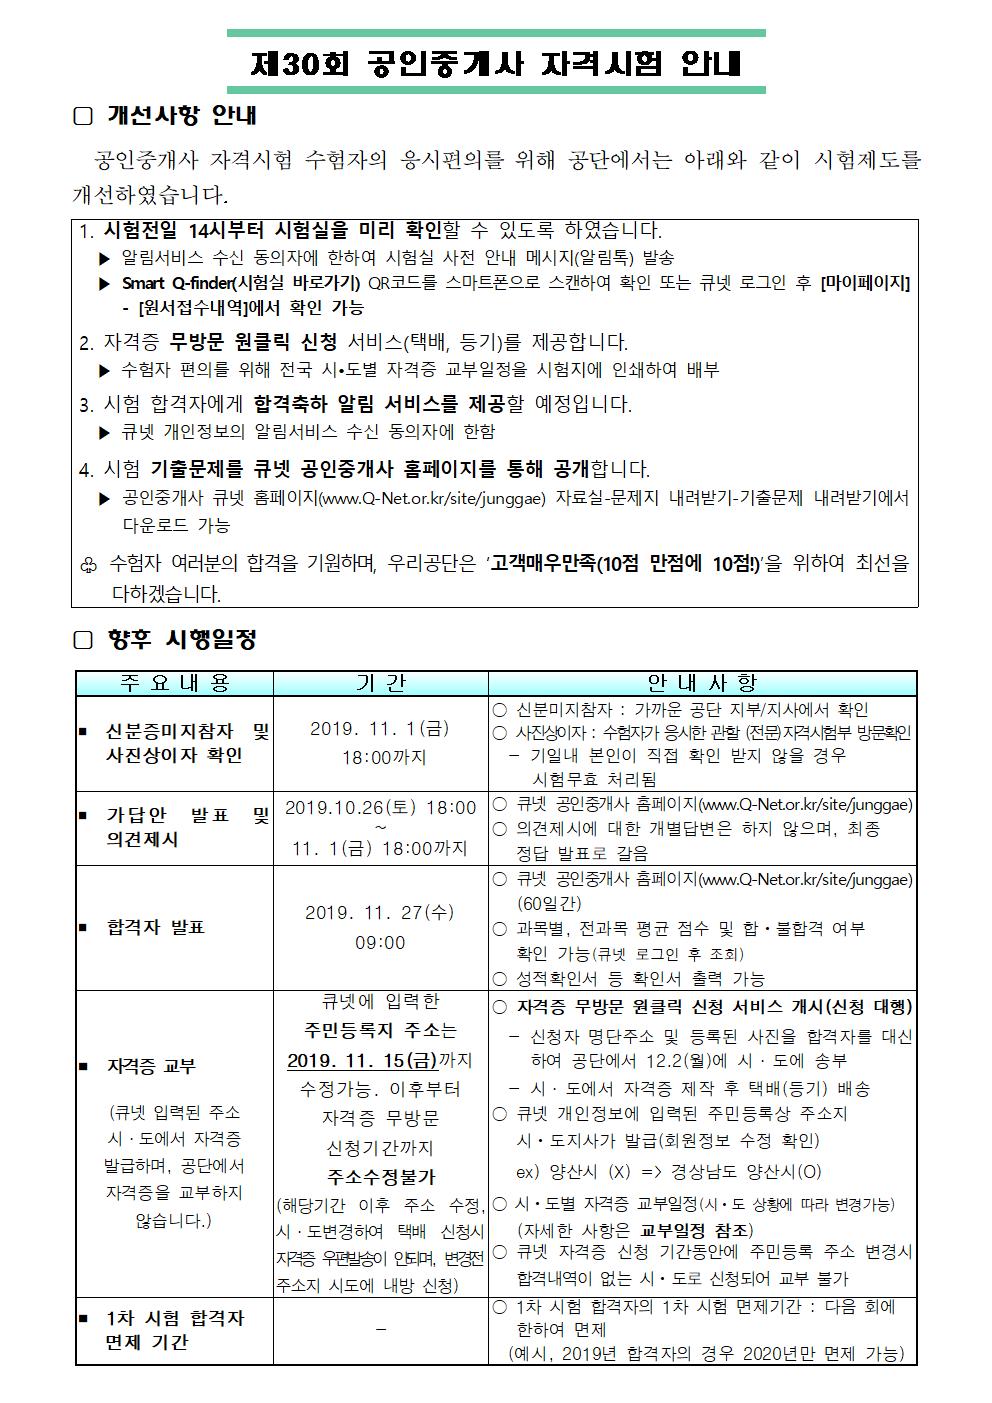 2019년 제30회 공인중개사 자격시험 안내- 큐넷.jpg